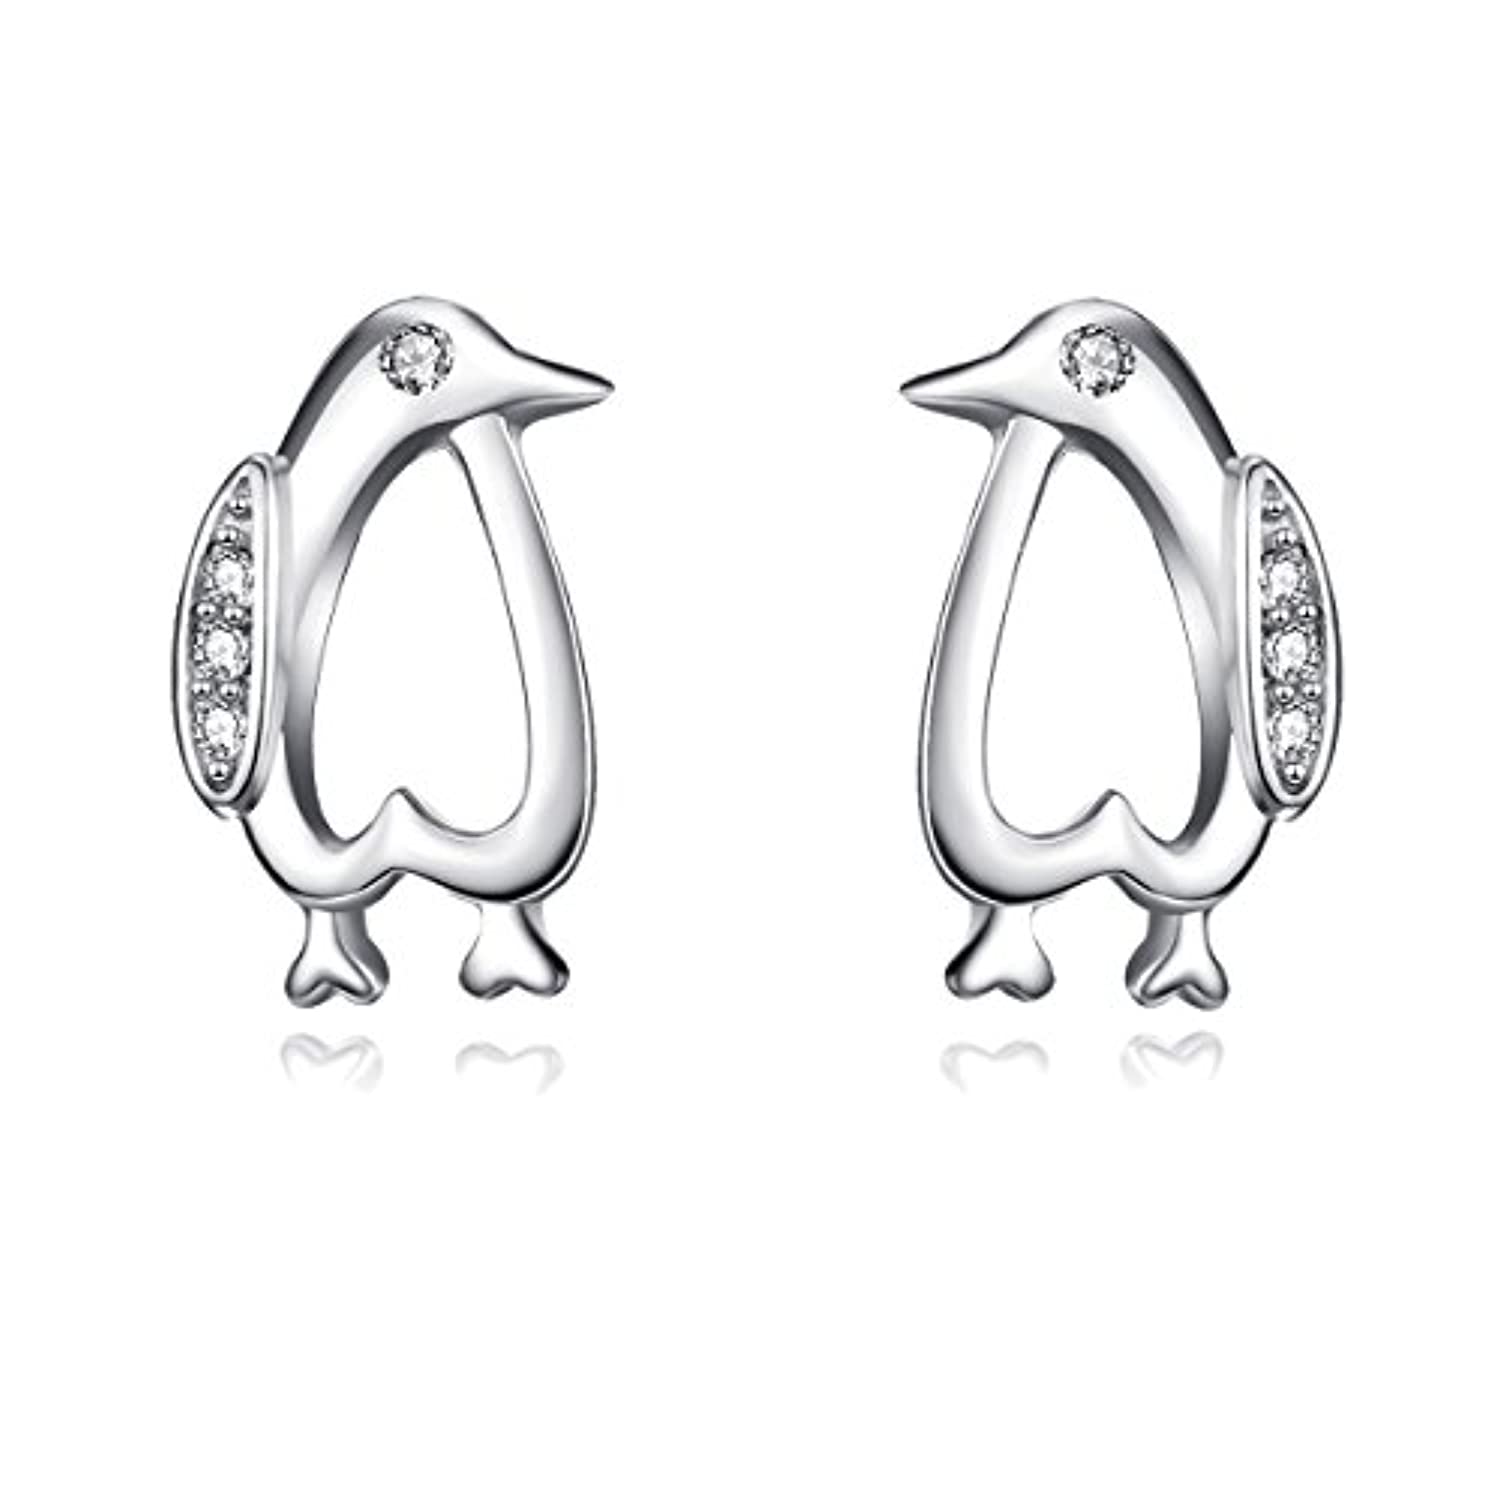 Angel caller Penguin Stud Earrings